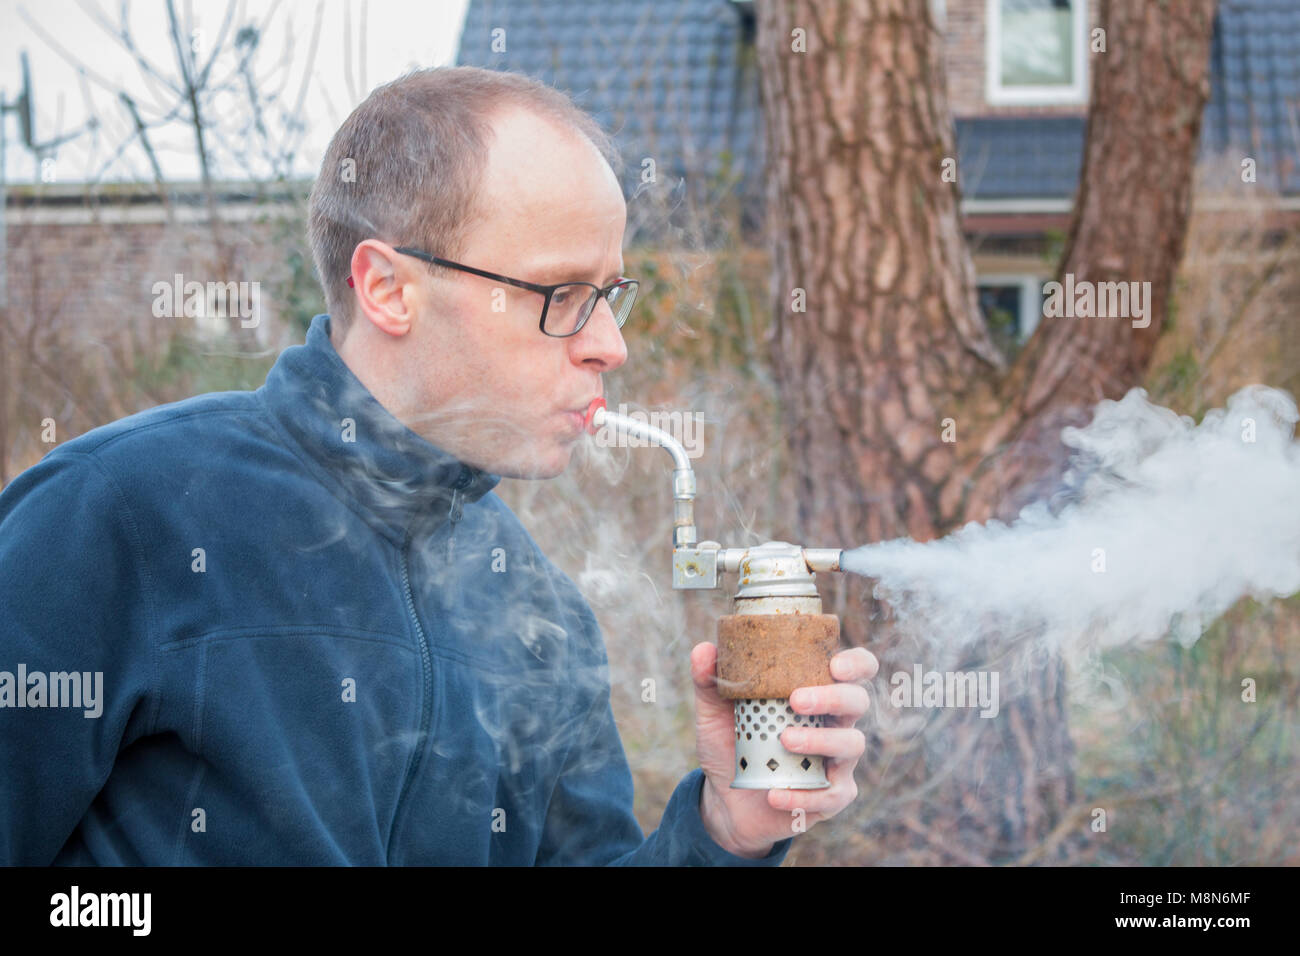 La fumée homme produit en soufflant dans un fumeur. Utilisé pour l'apiculture à maîtriser l'agressivité des abeilles Banque D'Images